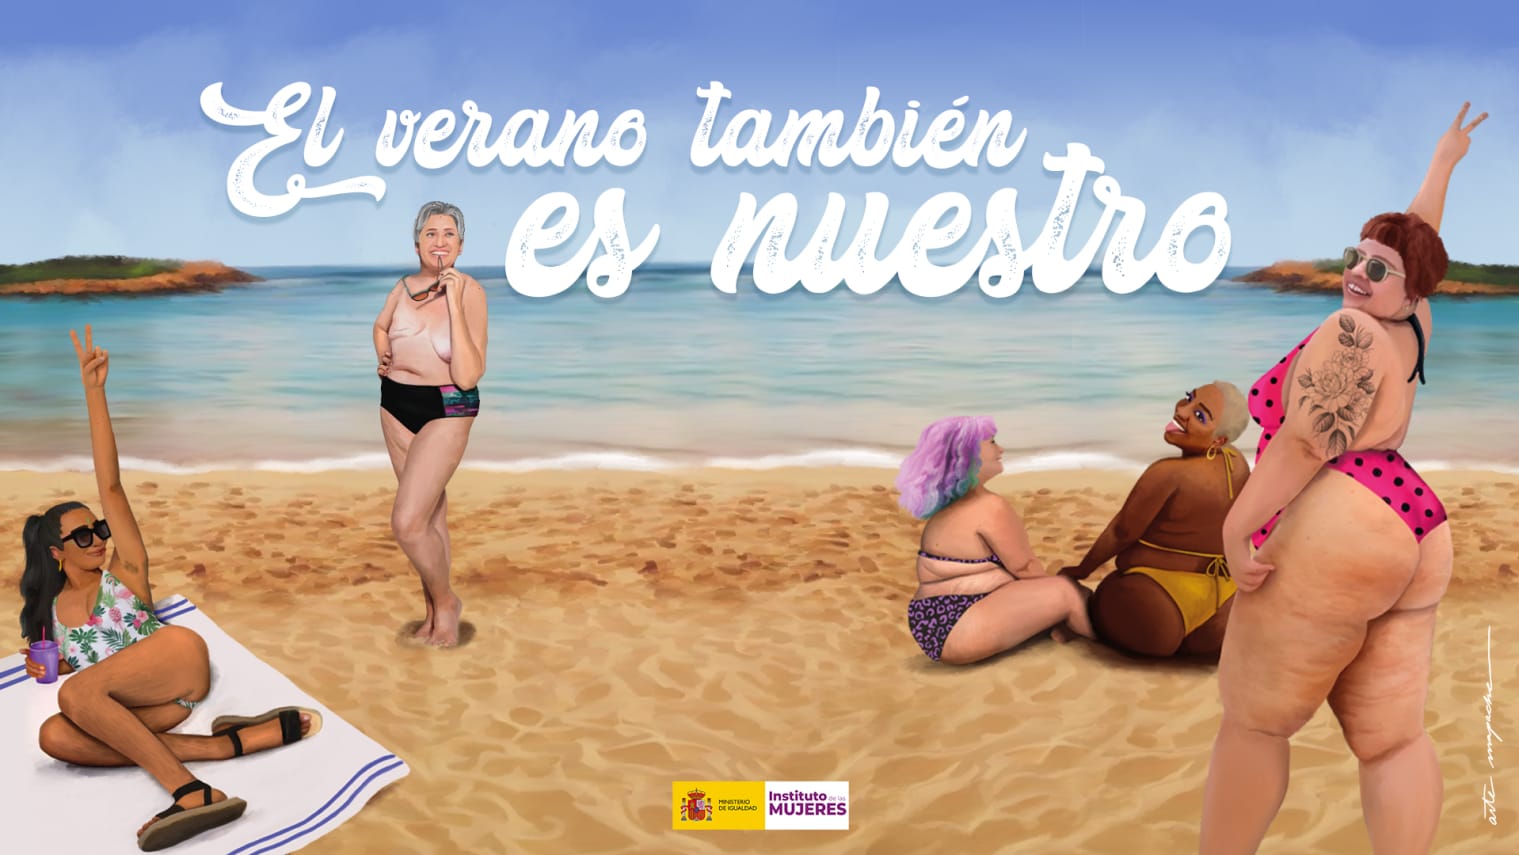 Áp phích quảng cáo chiến dịch của Bộ bình đẳng và Viện Phụ nữ Tây Ban Nha